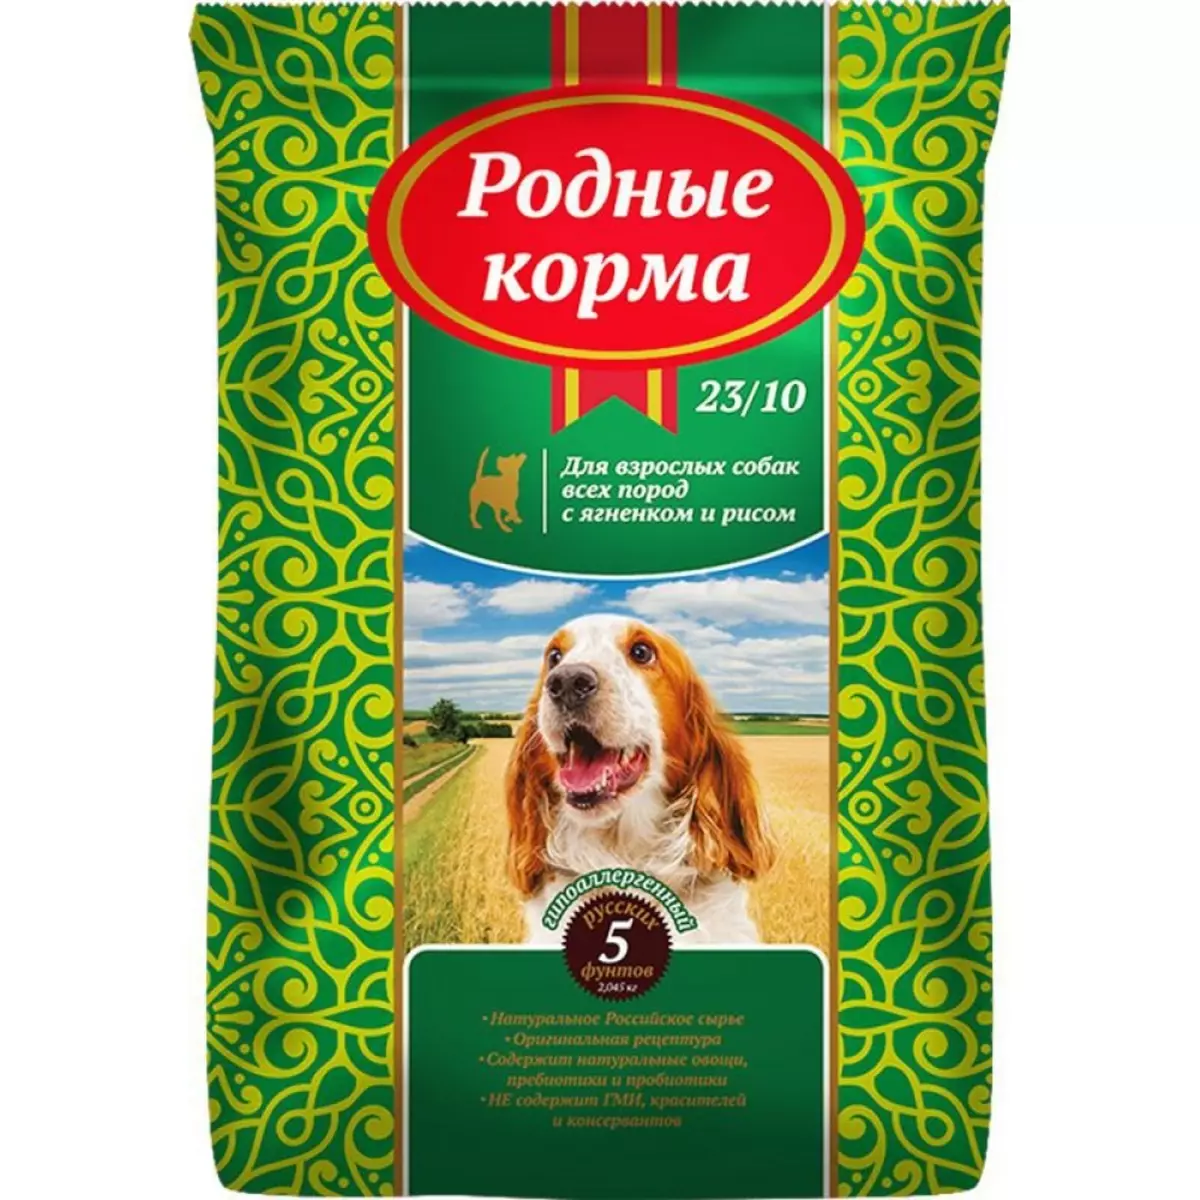 Tăng cấp cao cấp cho chó (43 ảnh): Xếp hạng nguồn cấp dữ liệu tốt nhập khẩu cho chó con, danh sách thức ăn cho chó Nga và Đức 12254_13